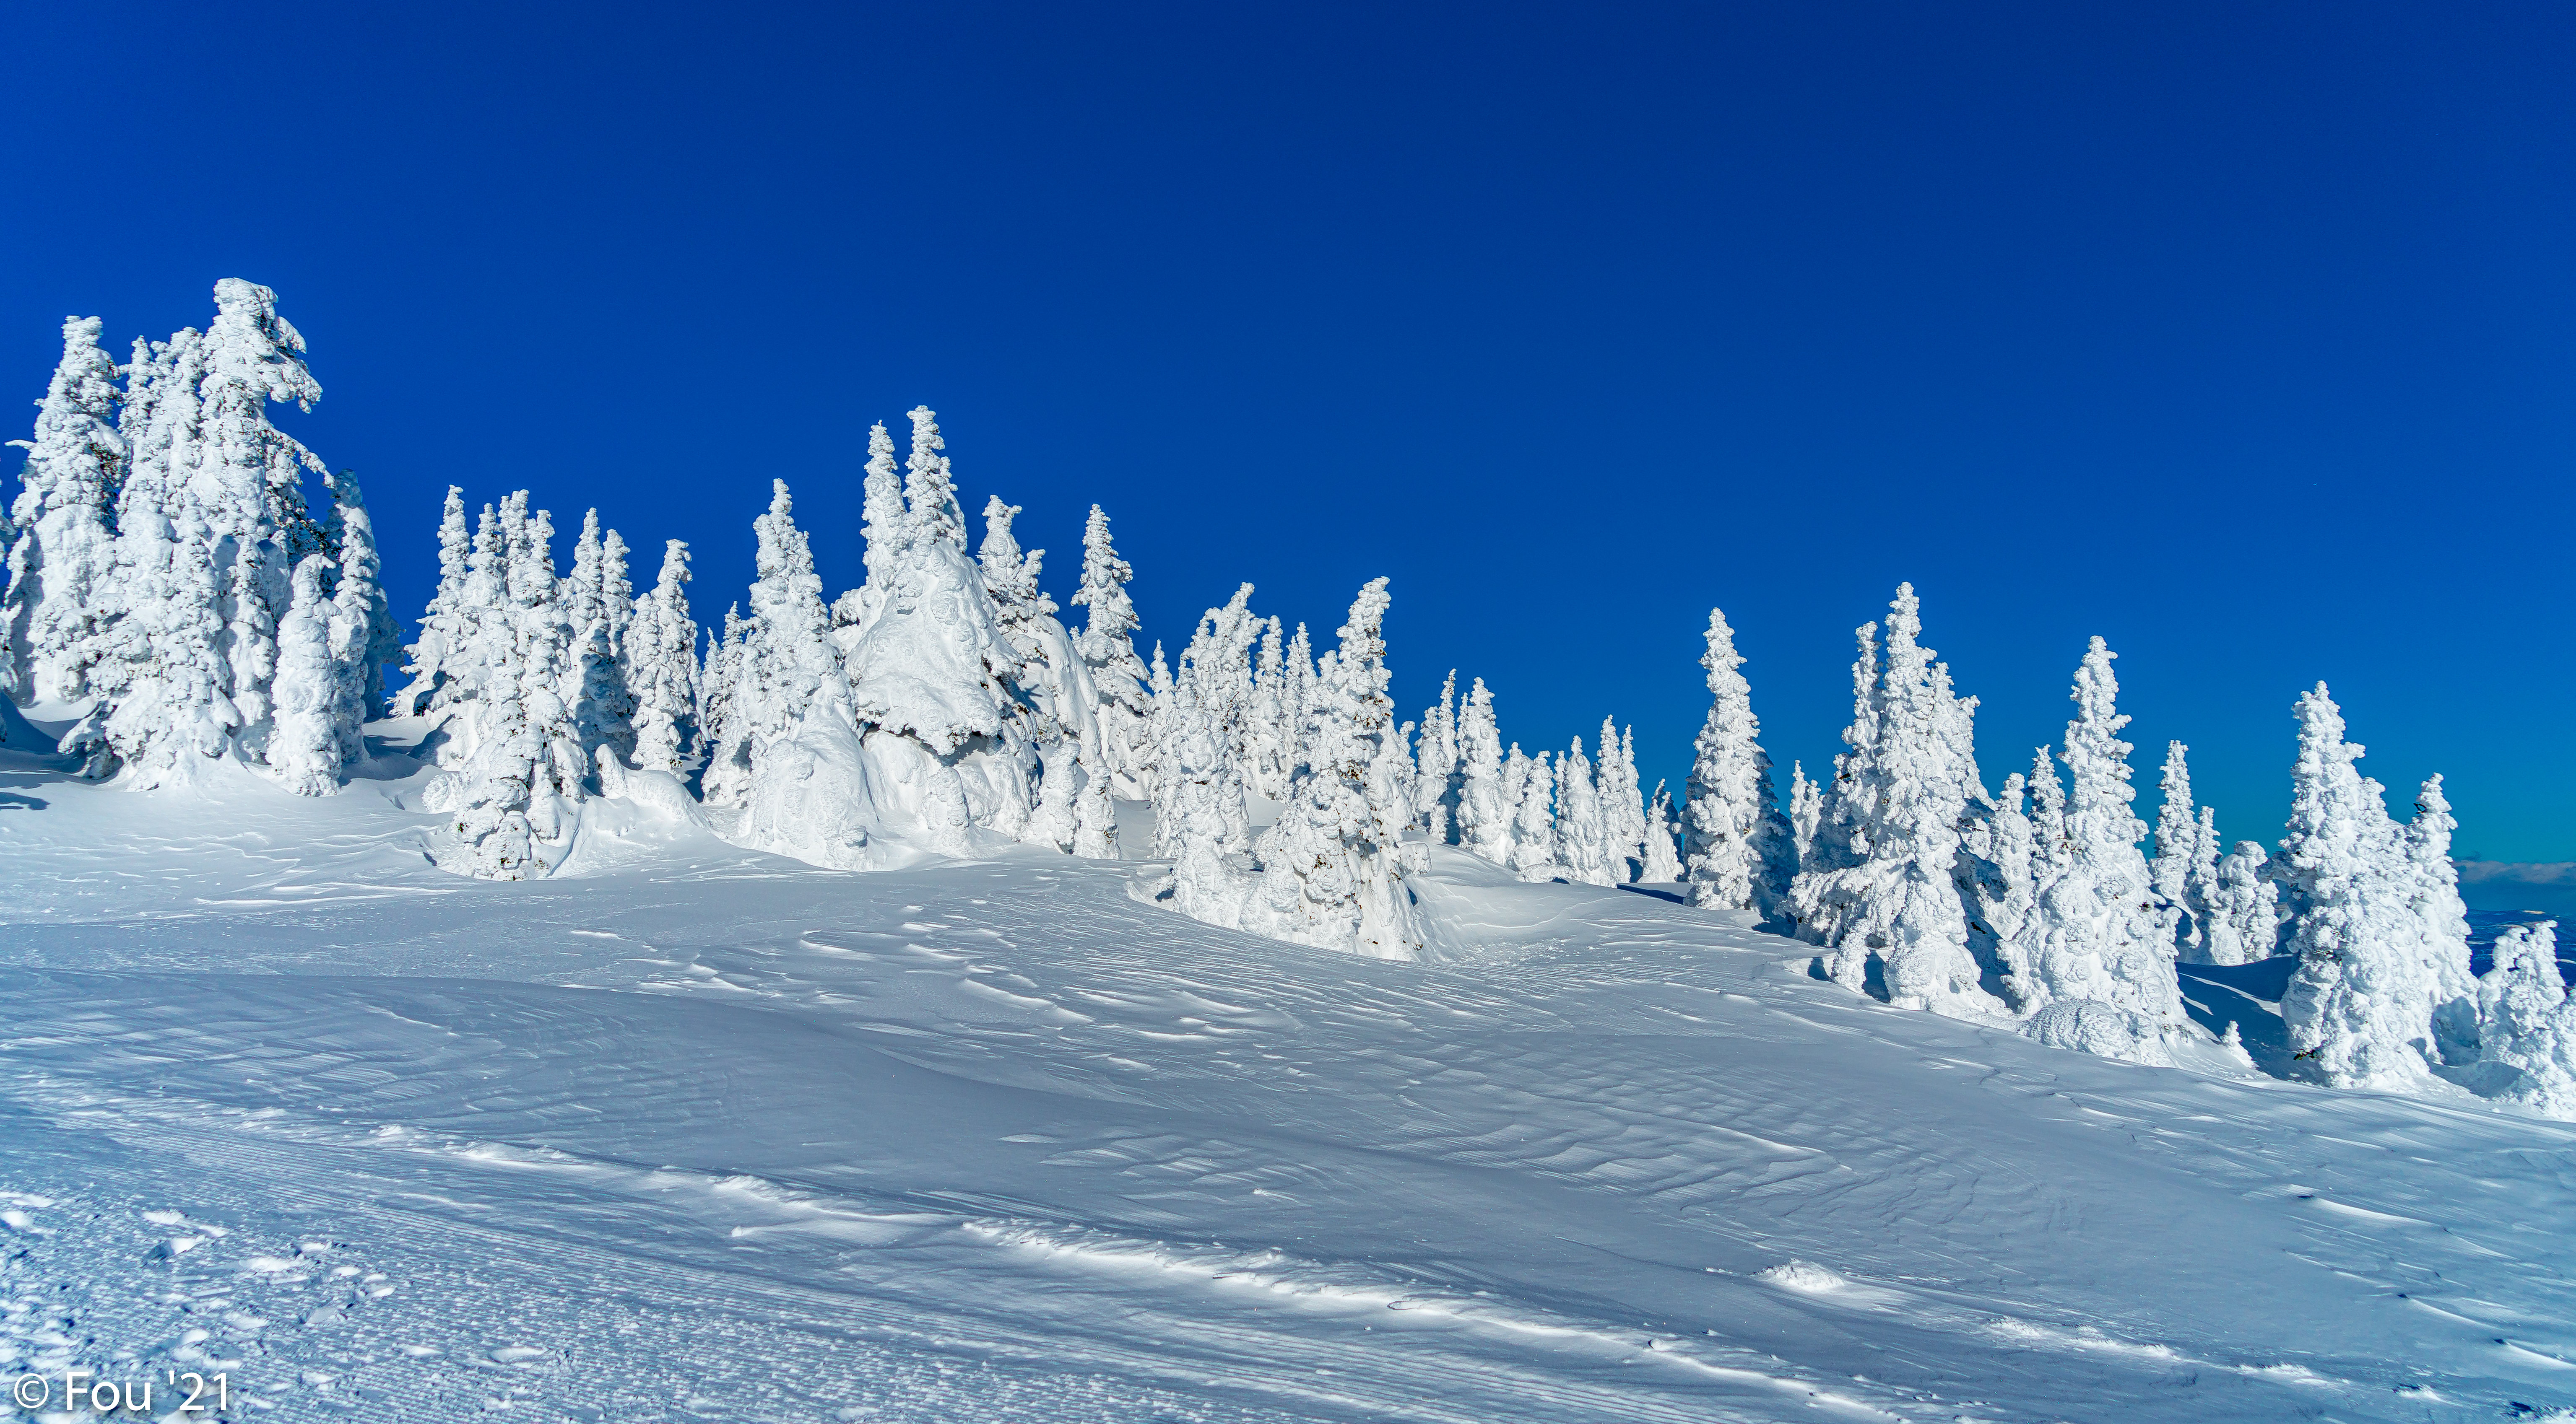 Скачать обои бесплатно Заснеженный, Снег, Деревья, Природа, Пейзаж, Зима картинка на рабочий стол ПК